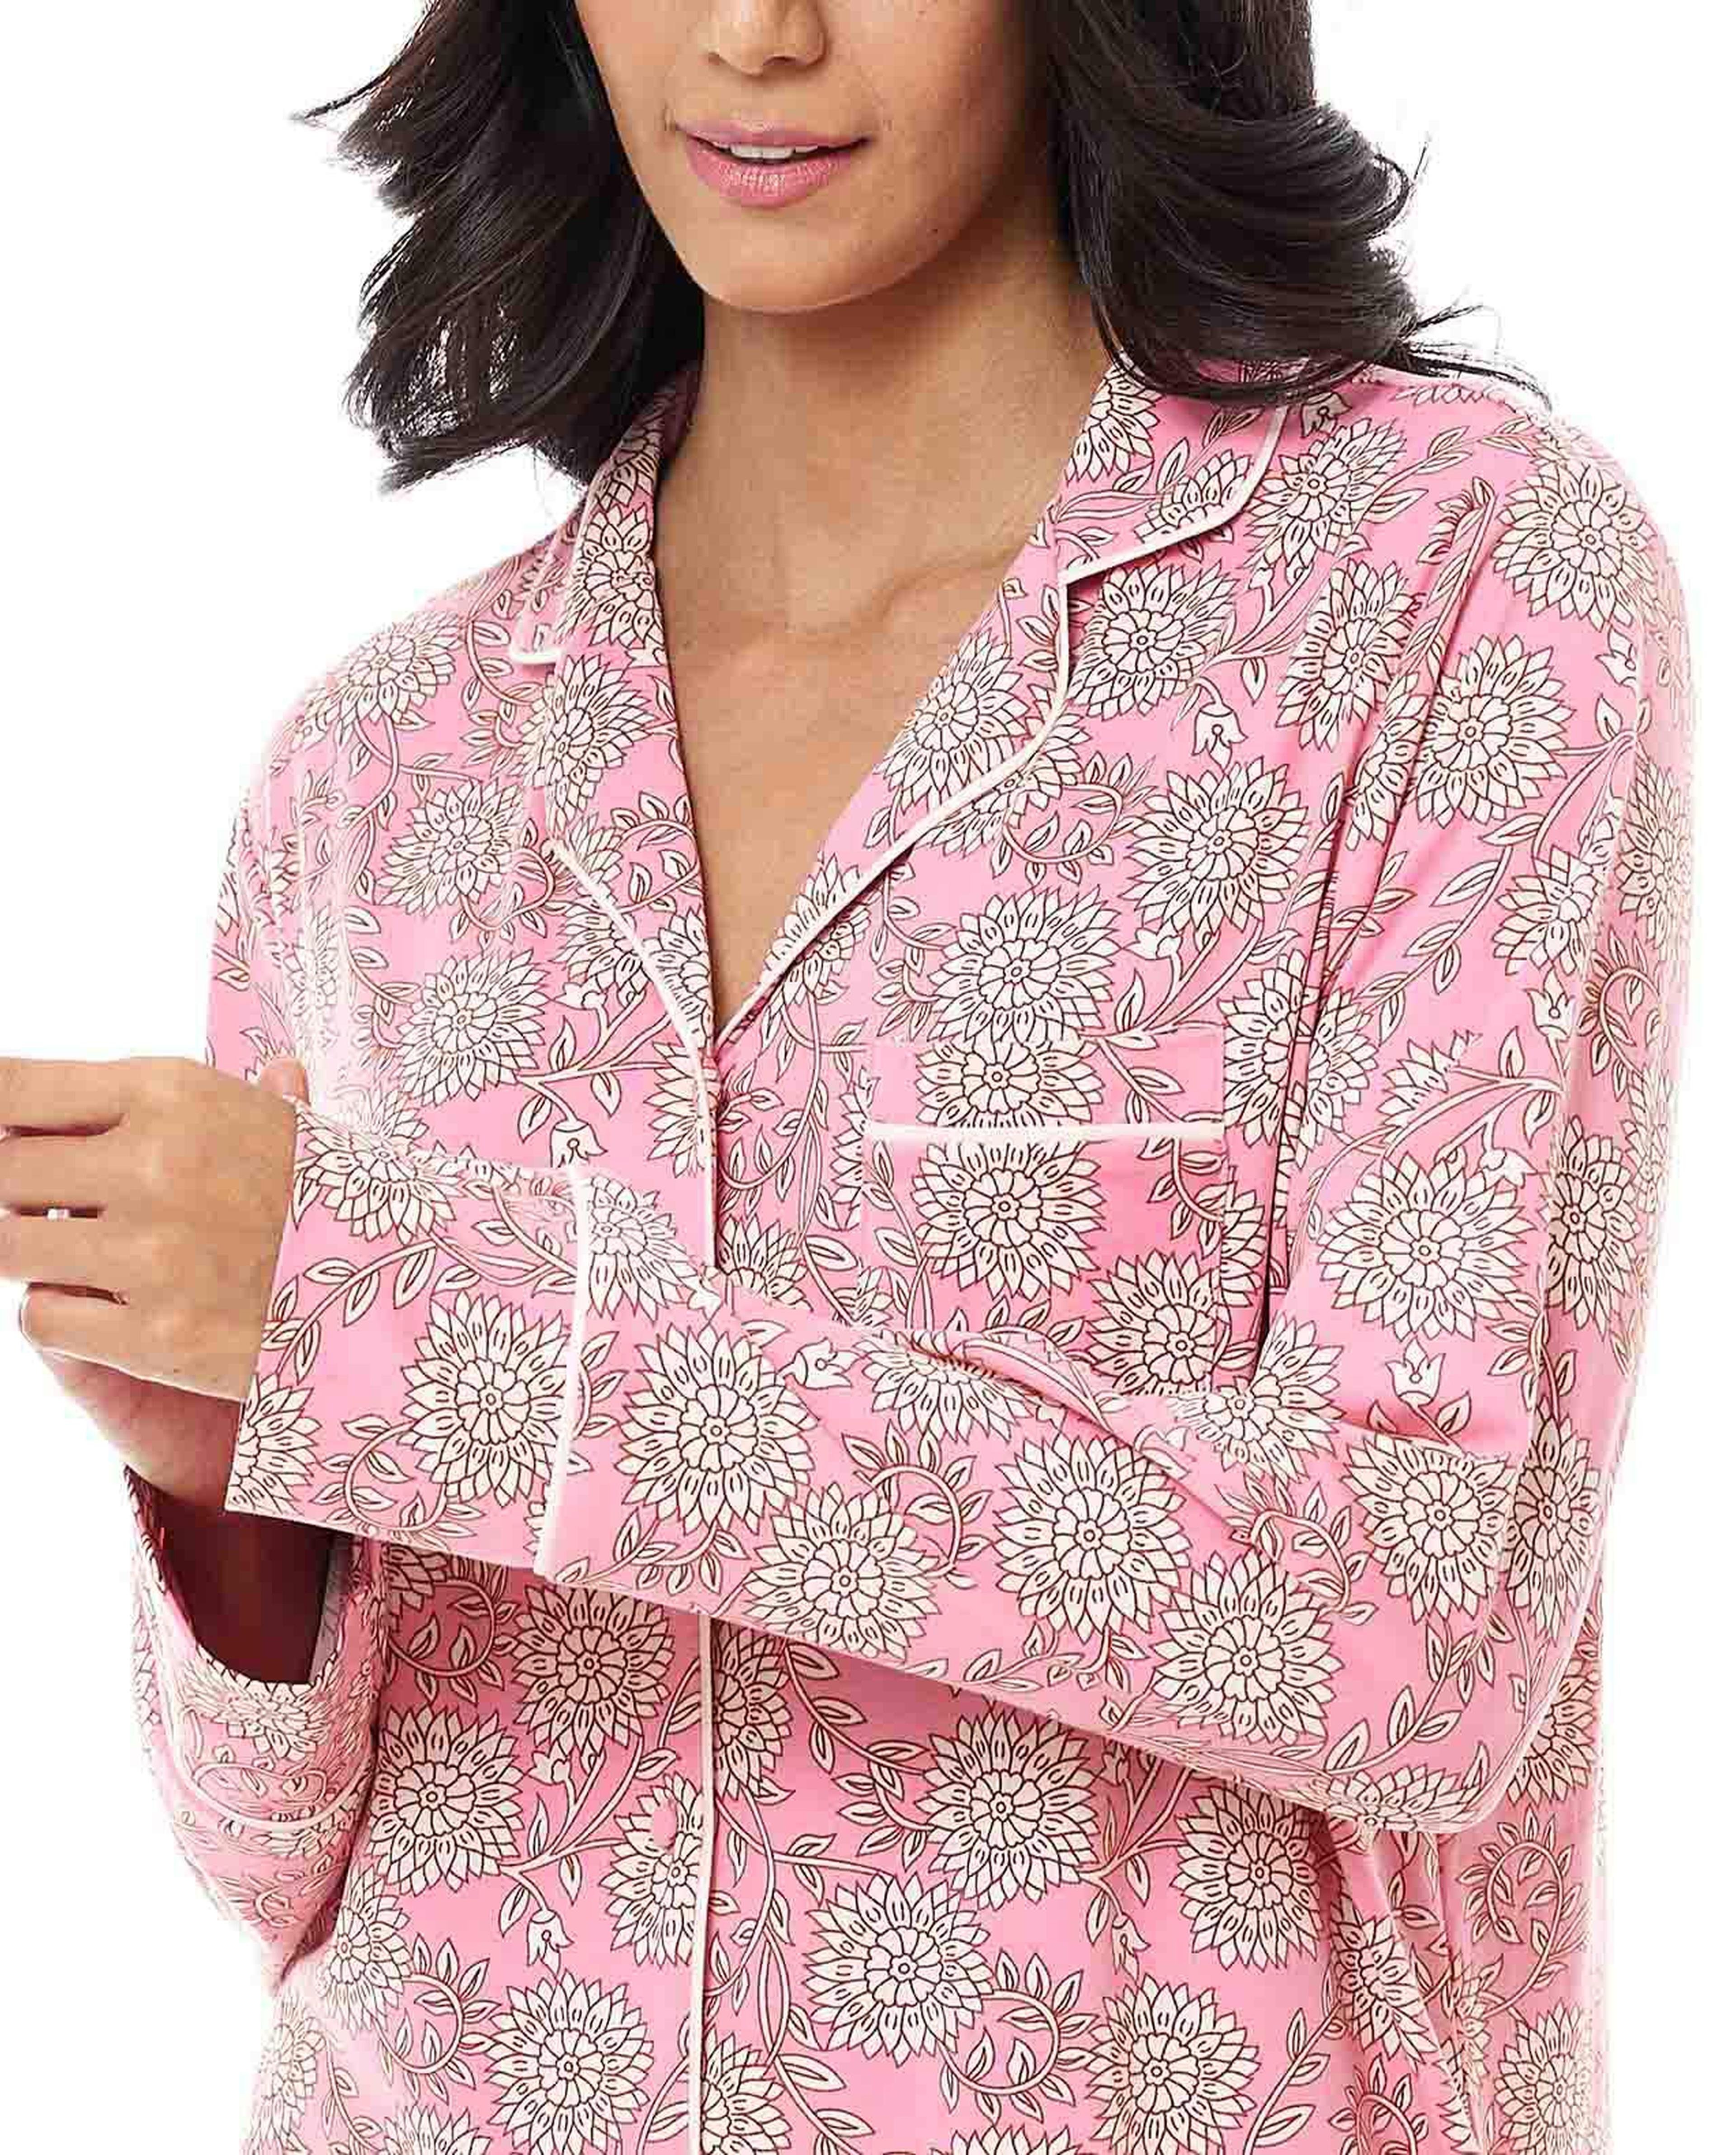 Floral Print Lapel Collar Pyjama Set